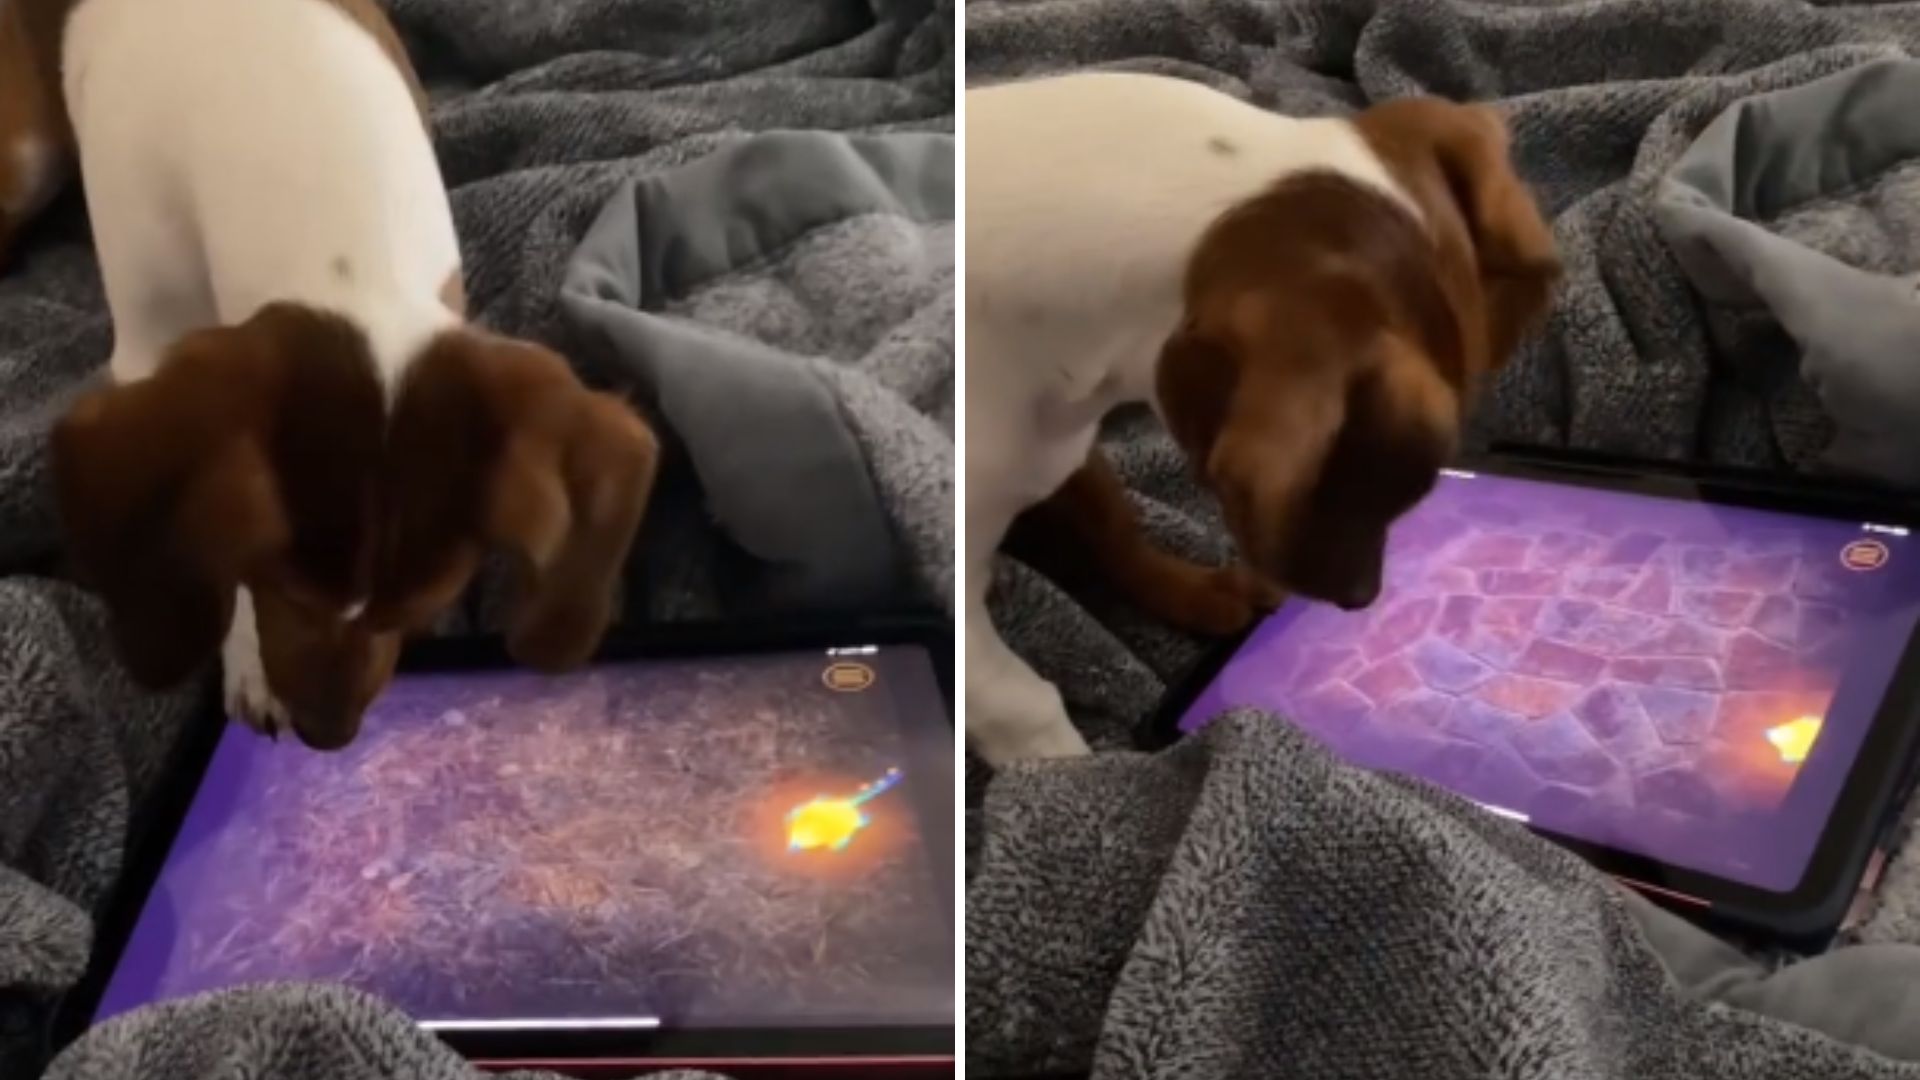 Cão viraliza após vídeo mostrando habilidade em jogos de tabuleiro, Comportamento